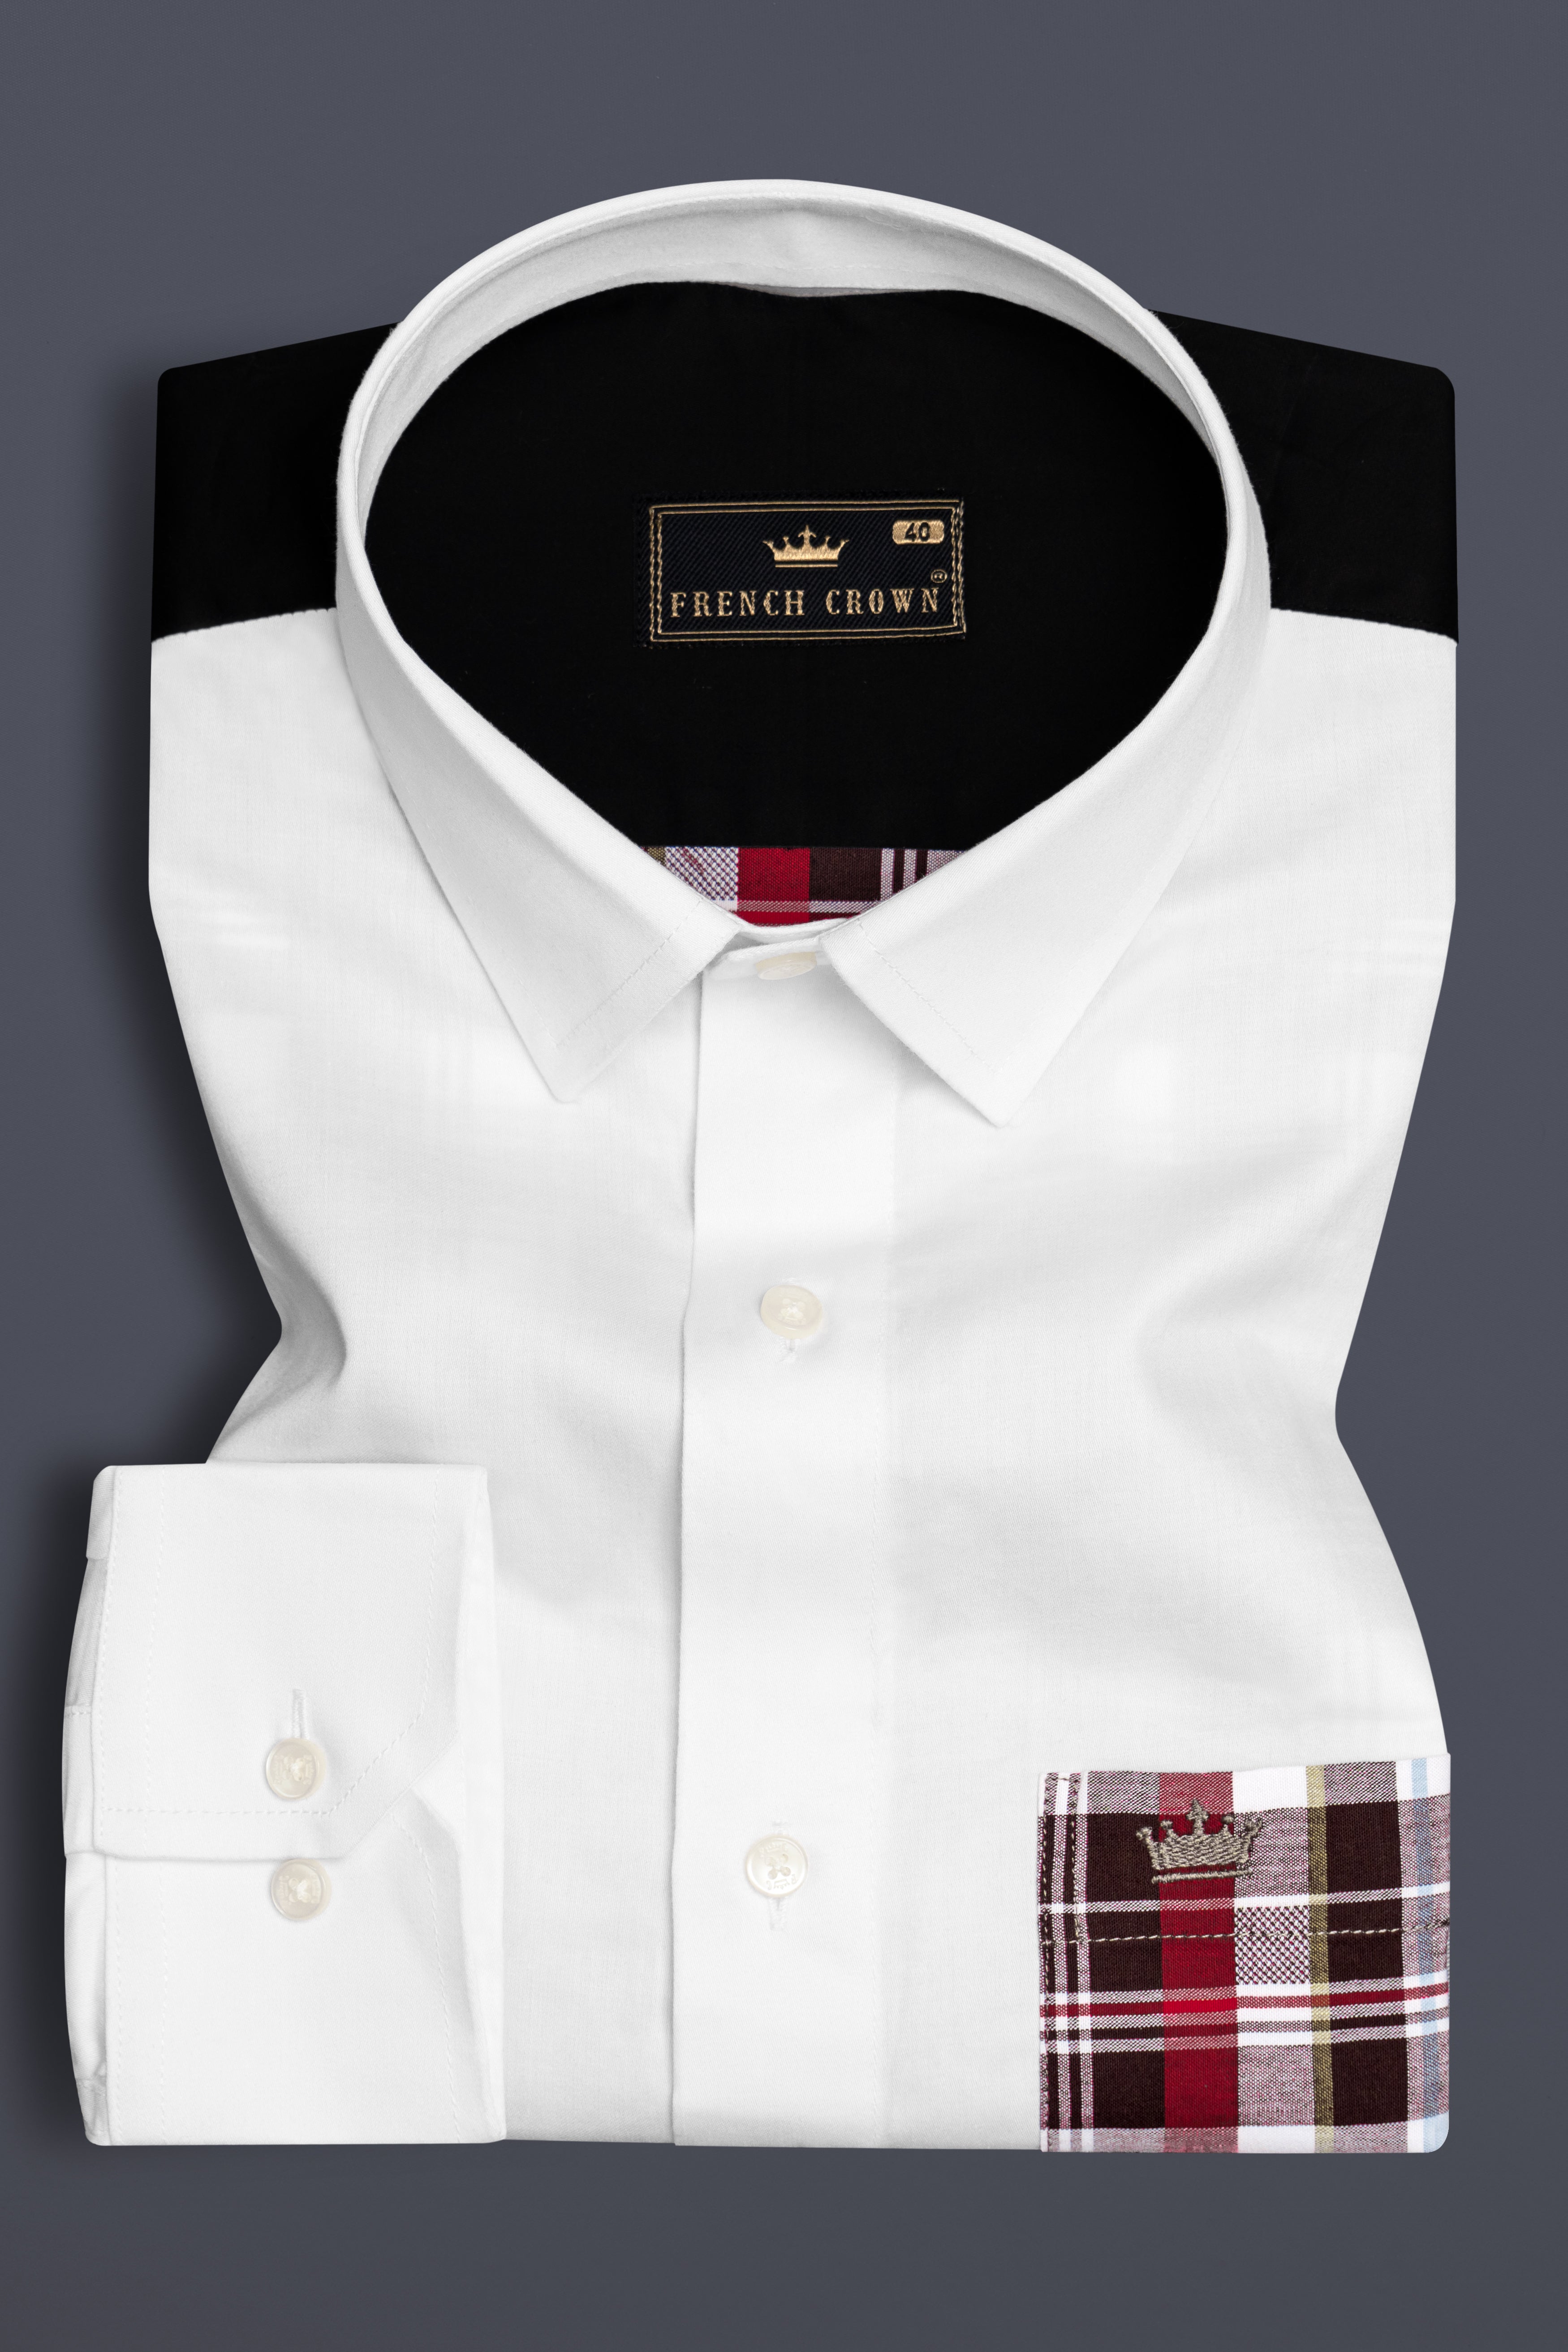 Bright White with Checkered Pocket Super Soft Premium Cotton Shirt